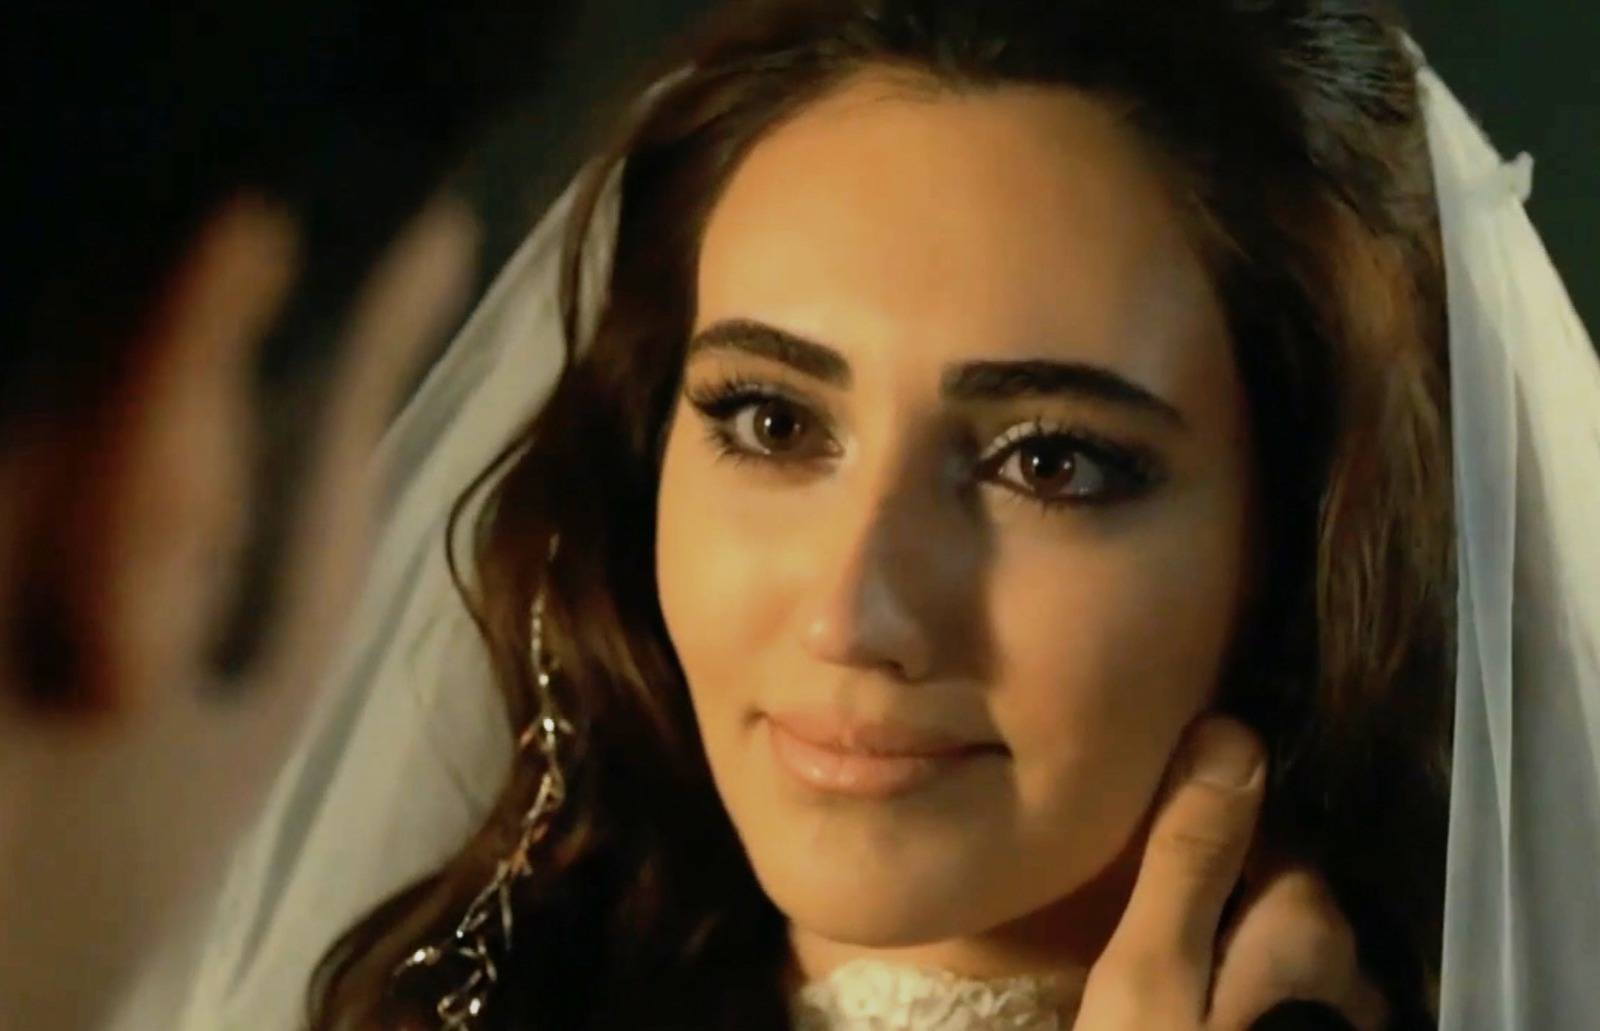 La boda de Gülten y Çetin en Tierra amarga y su primera noche juntos ¡en imágenes!